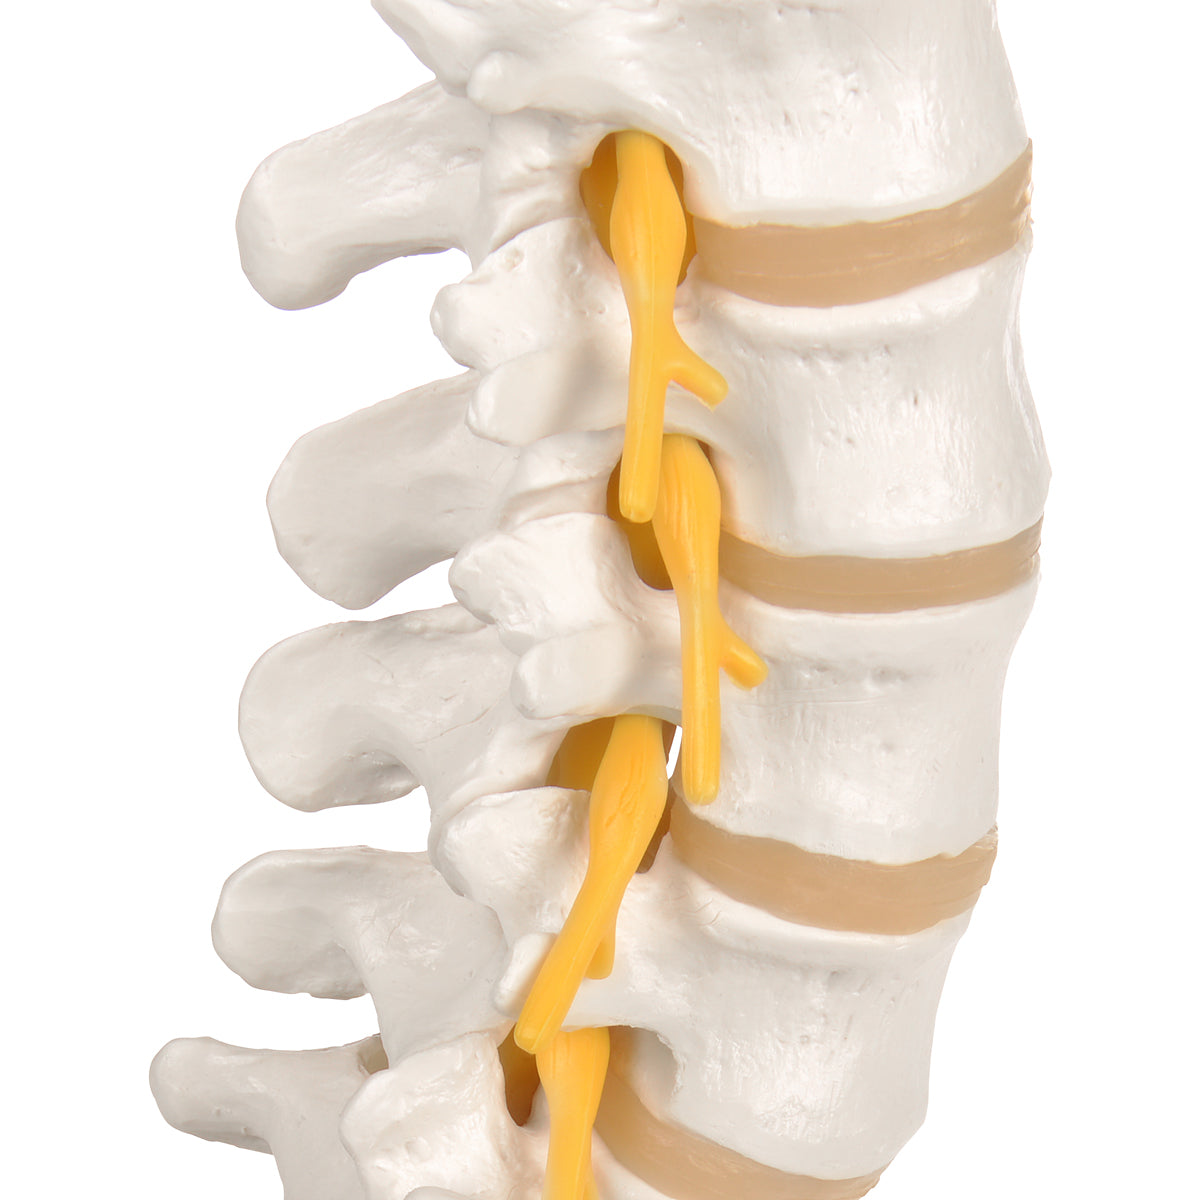 Flexibel modell av nedre delen av ryggen, korsbenet och coccyx med nerver